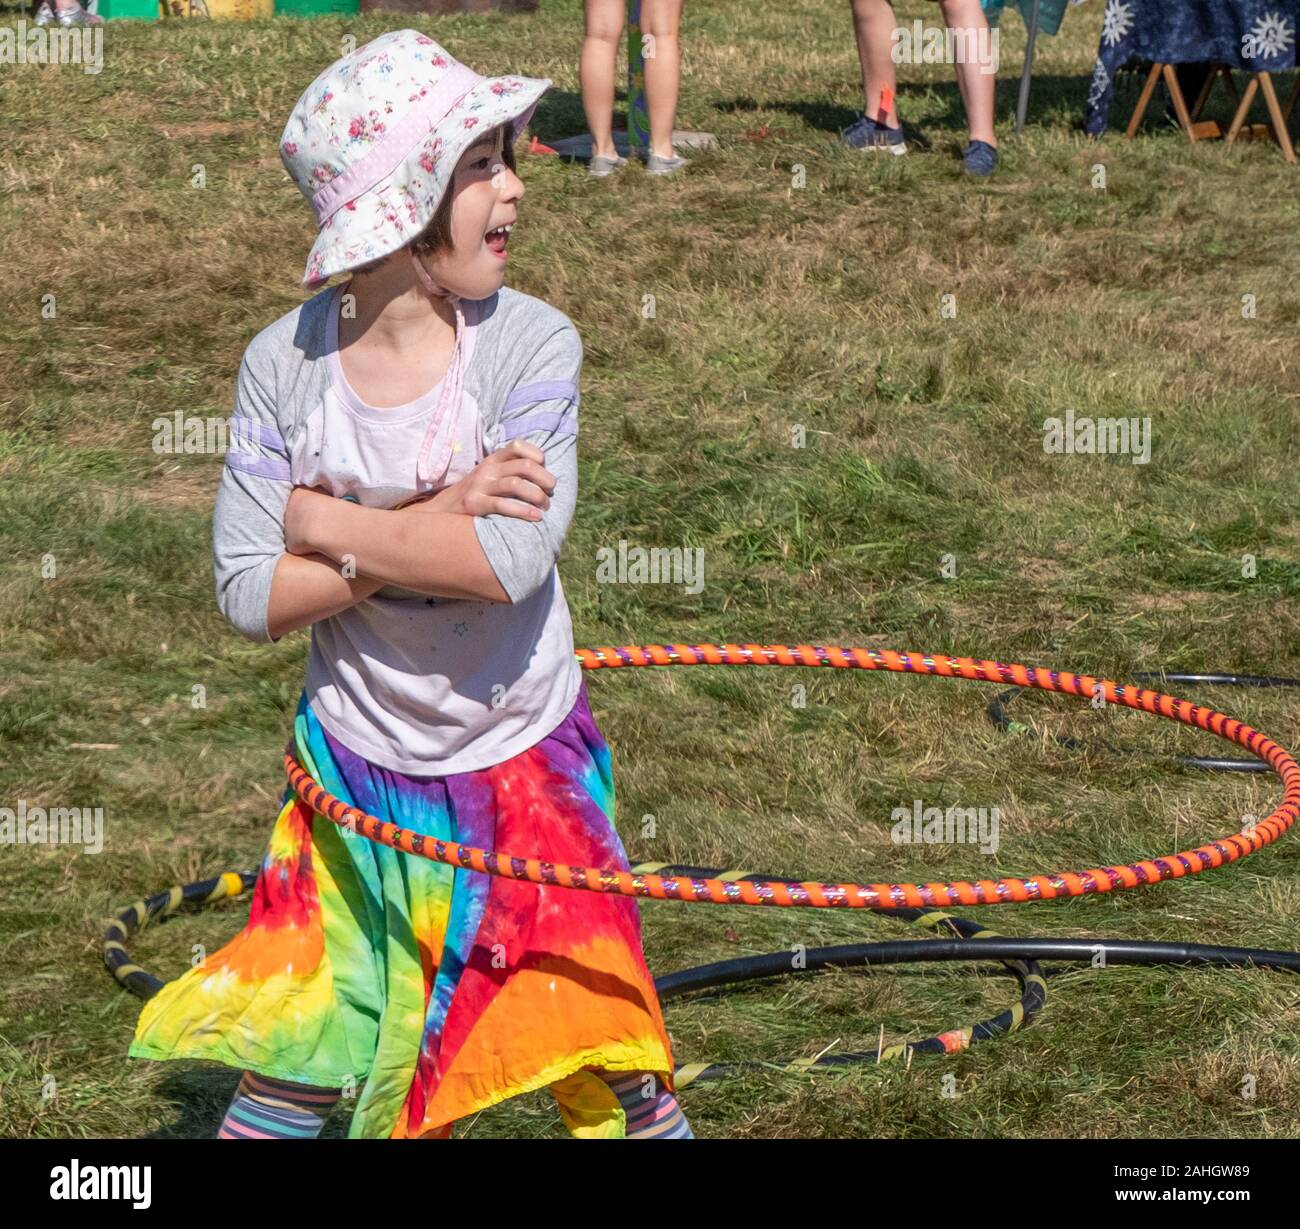 Jeune fille jouant avec un hula hoop Banque D'Images